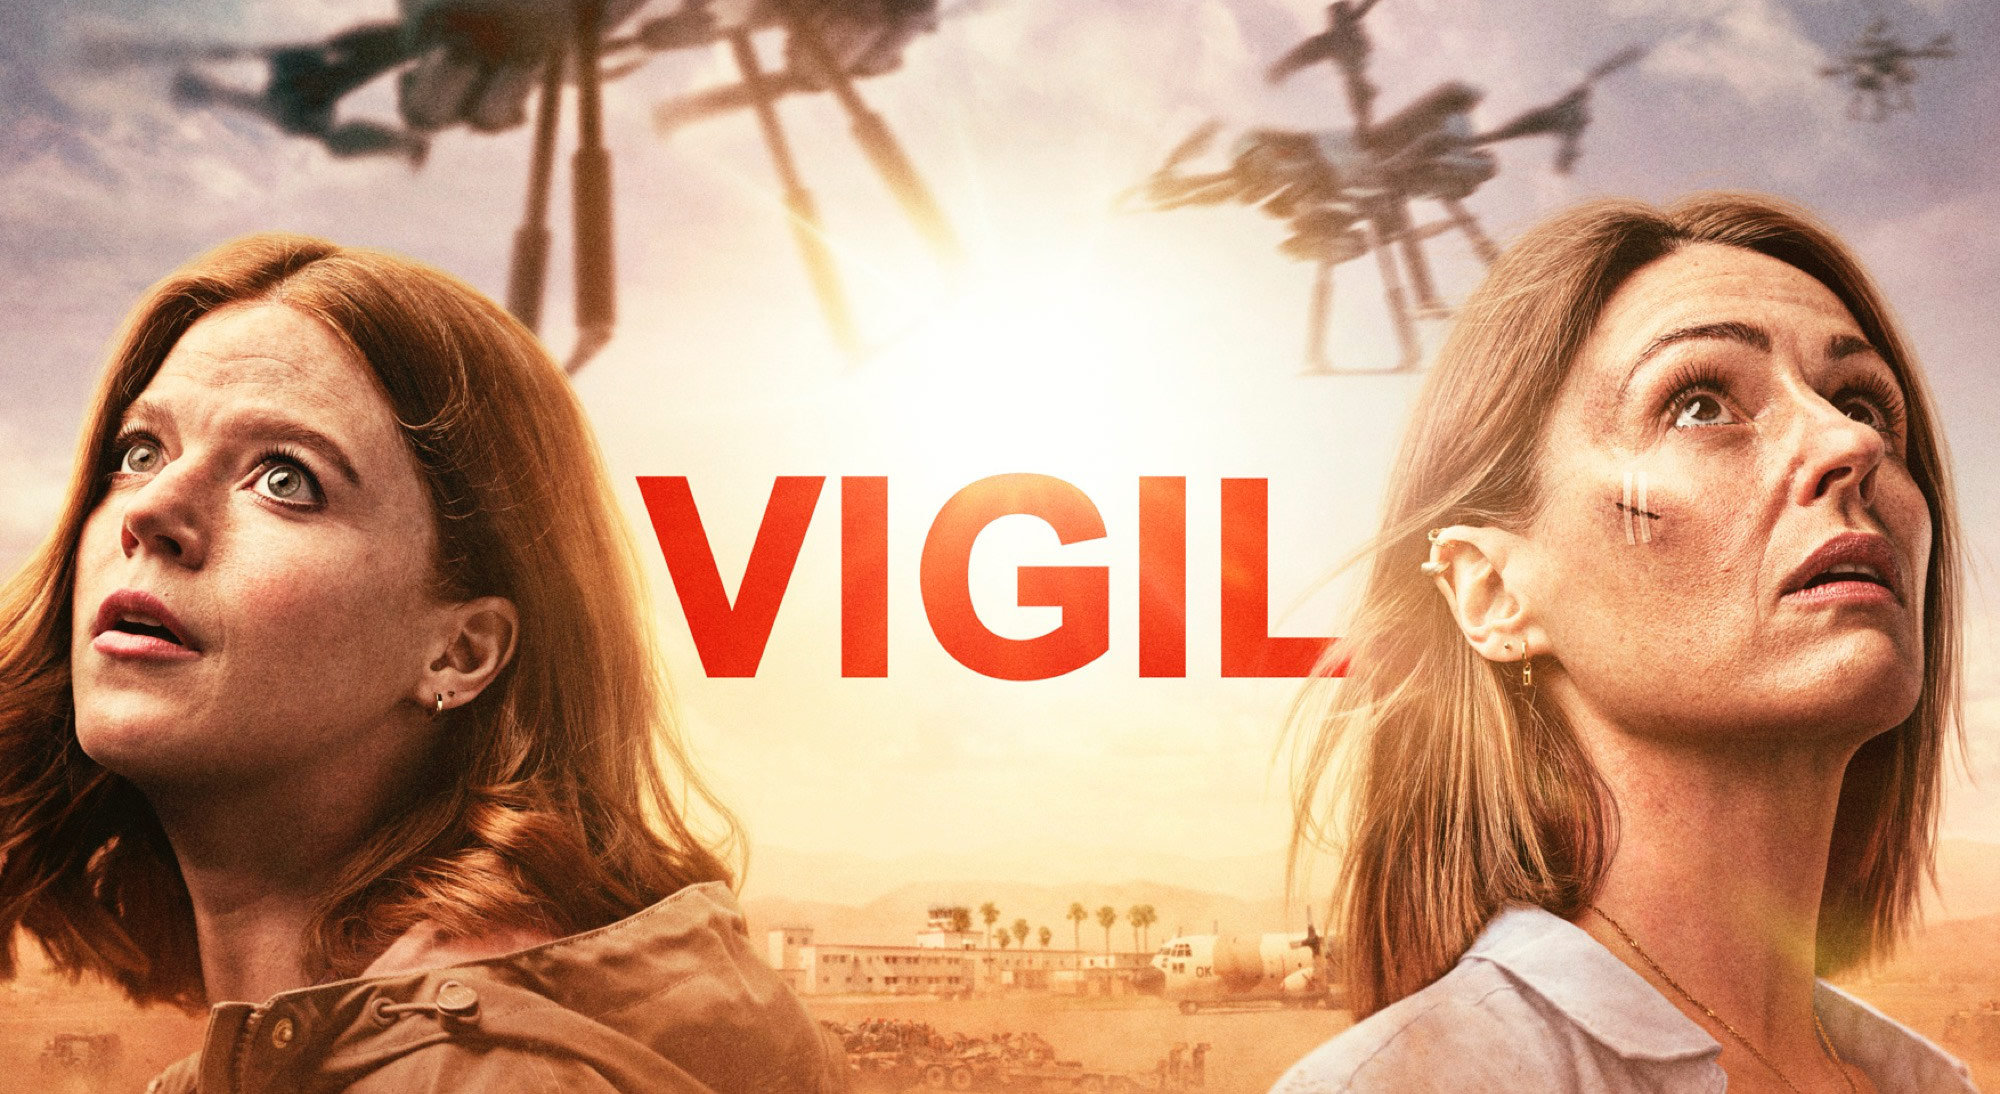 BBC crime drama “Vigil” uses DaVinci Resolve Studio